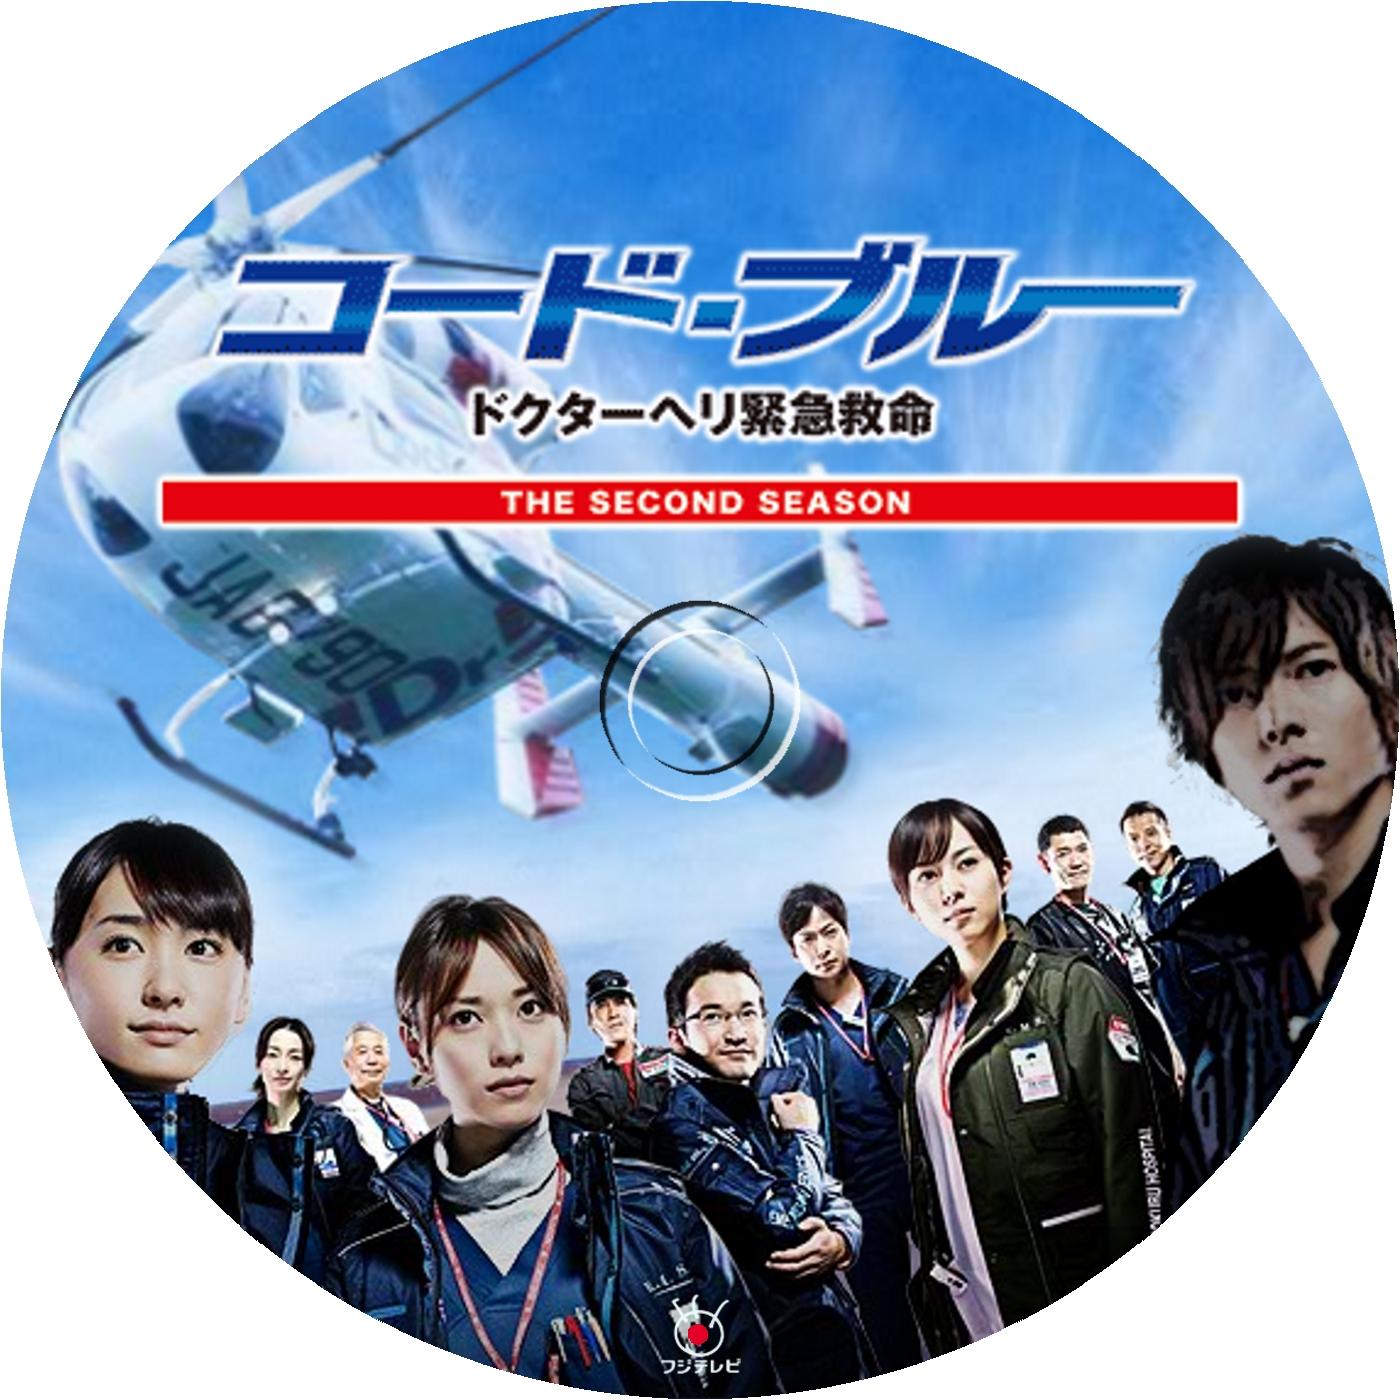 コード・ブルー ドクターヘリ緊急救命 2nd season DVD-BOX 